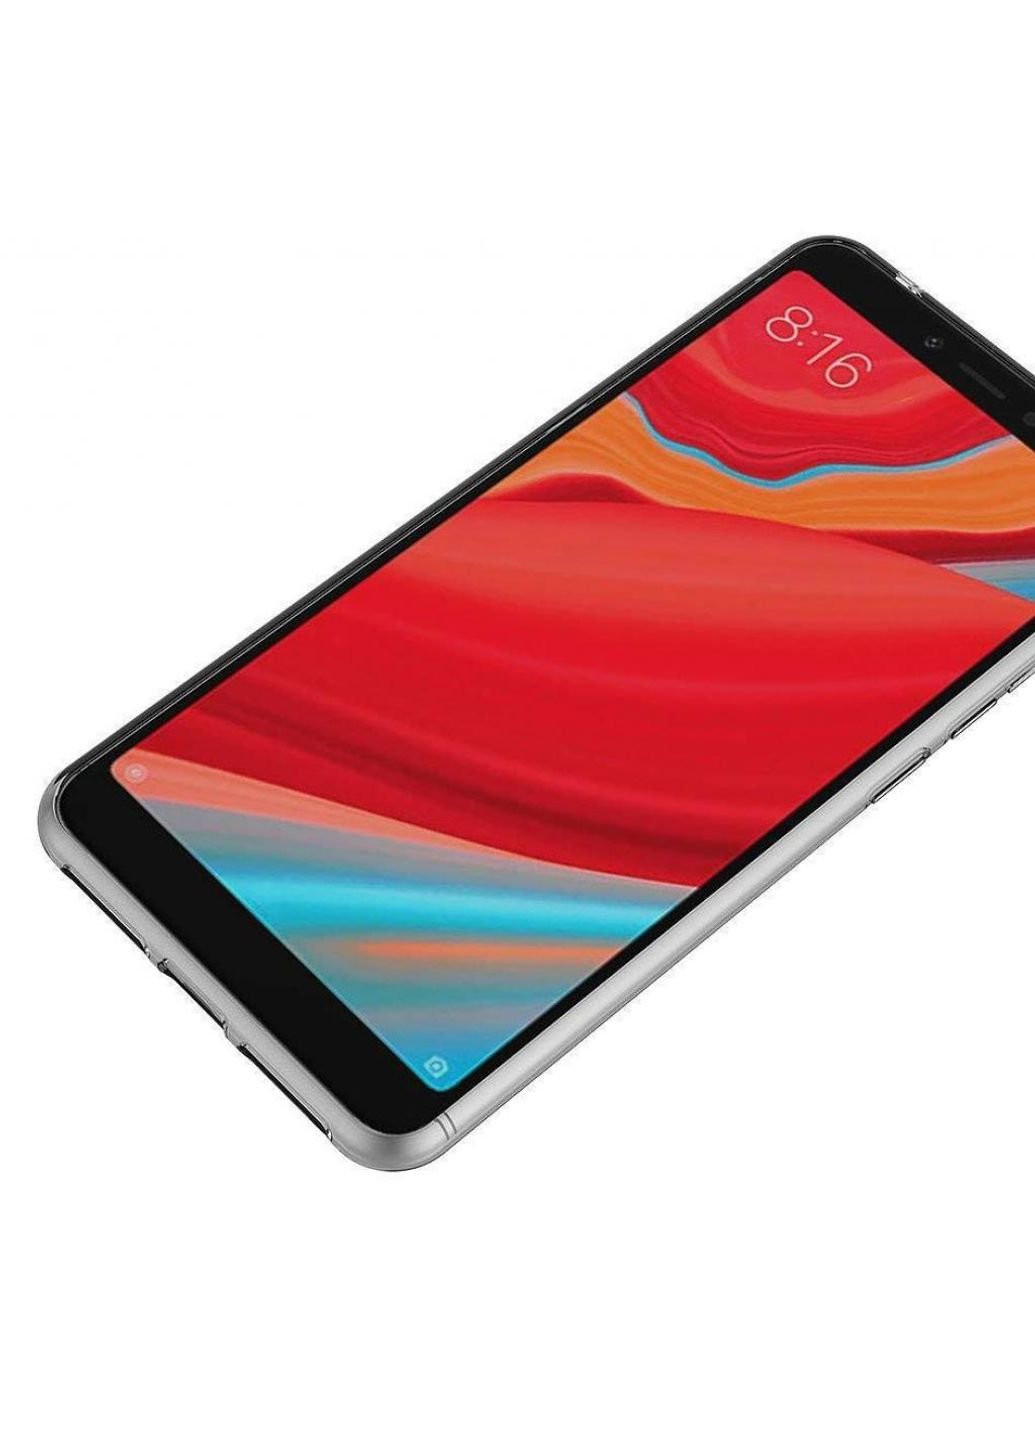 Чехол для мобильного телефона для Xiaomi S2 Clear tpu (Transperent) (LC-S2) Laudtec (252571363)